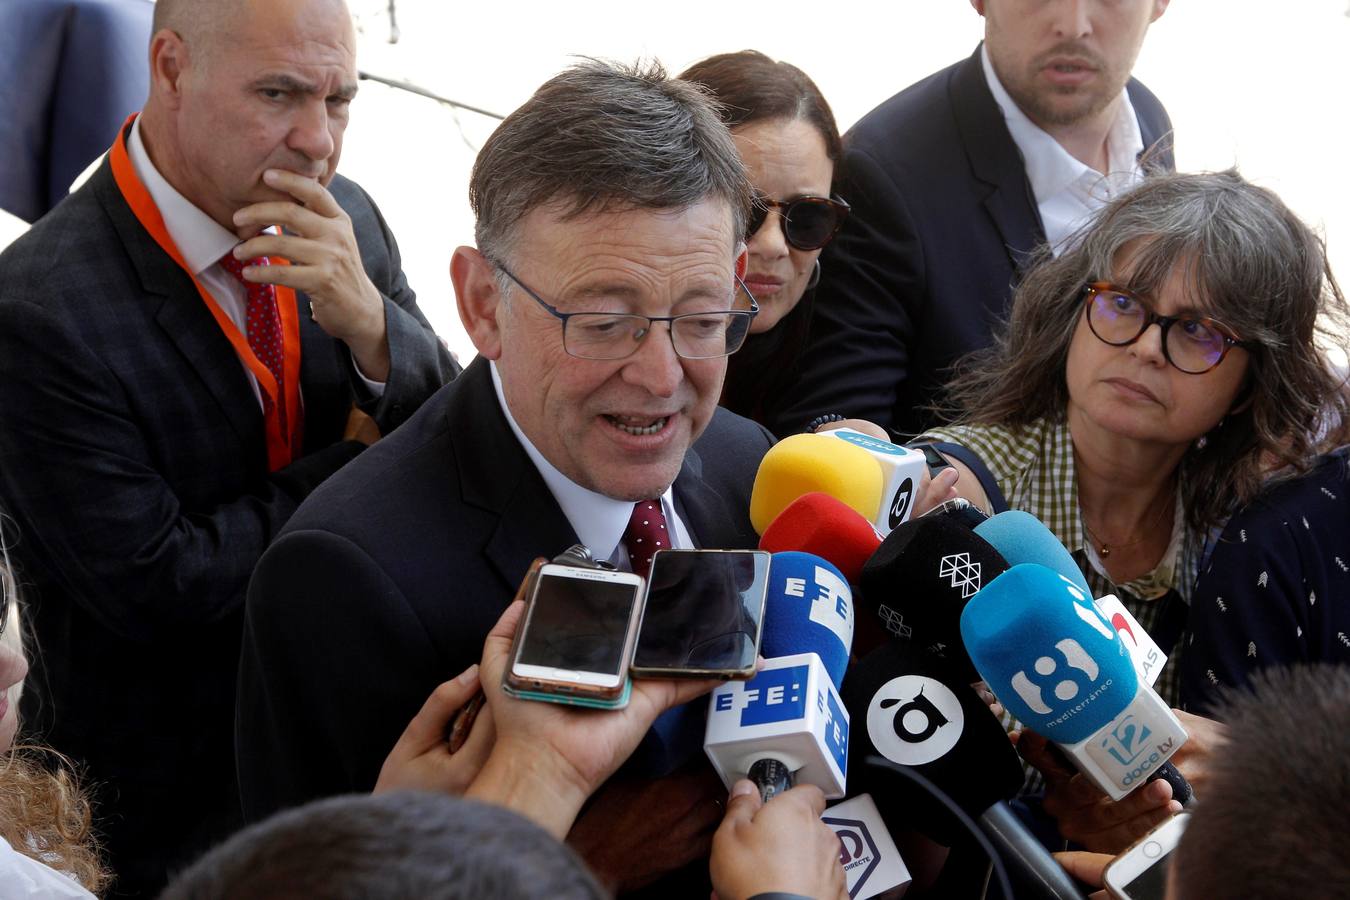 El presidente de la Generalitat, XImo Puig, hace declaraciones sobre la detención de Jorge Rodríguez, presidente de la Diputación de Valencia.